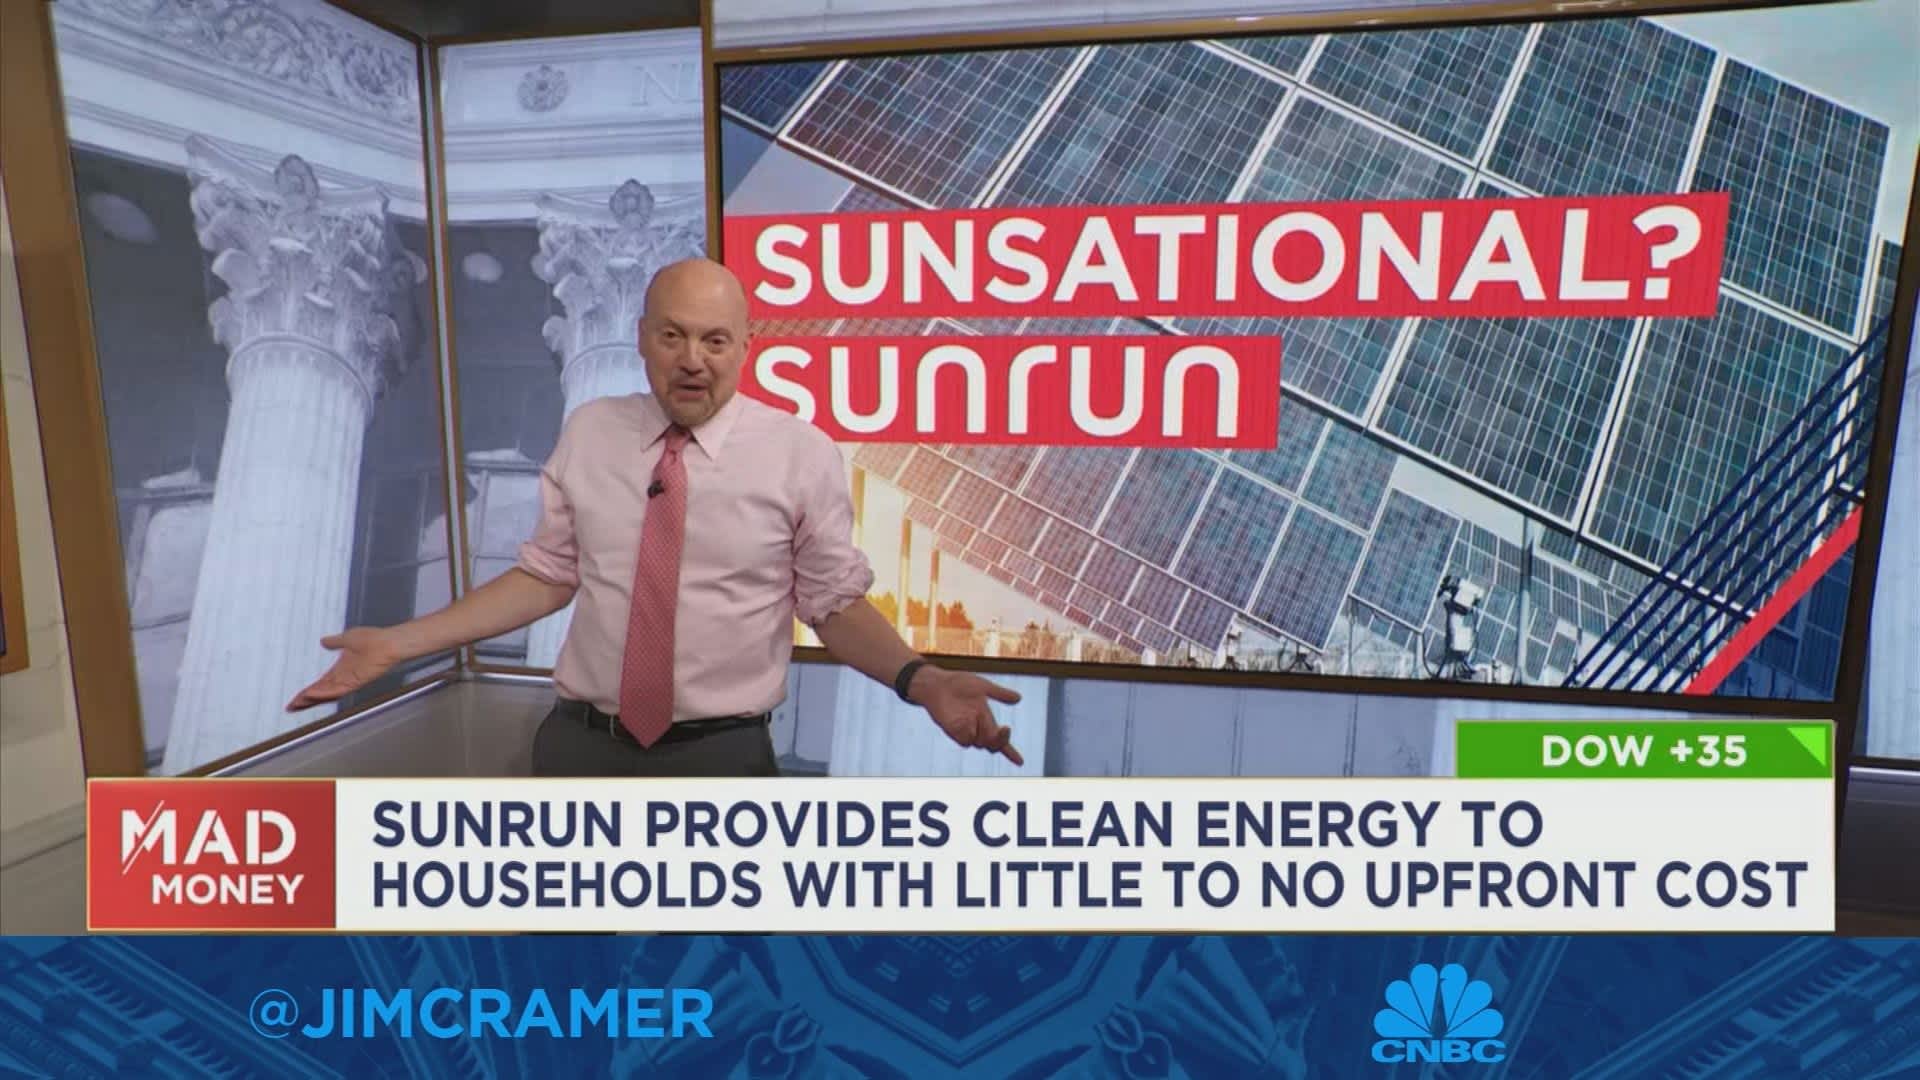 Jim Cramer gives his take on Sunrun